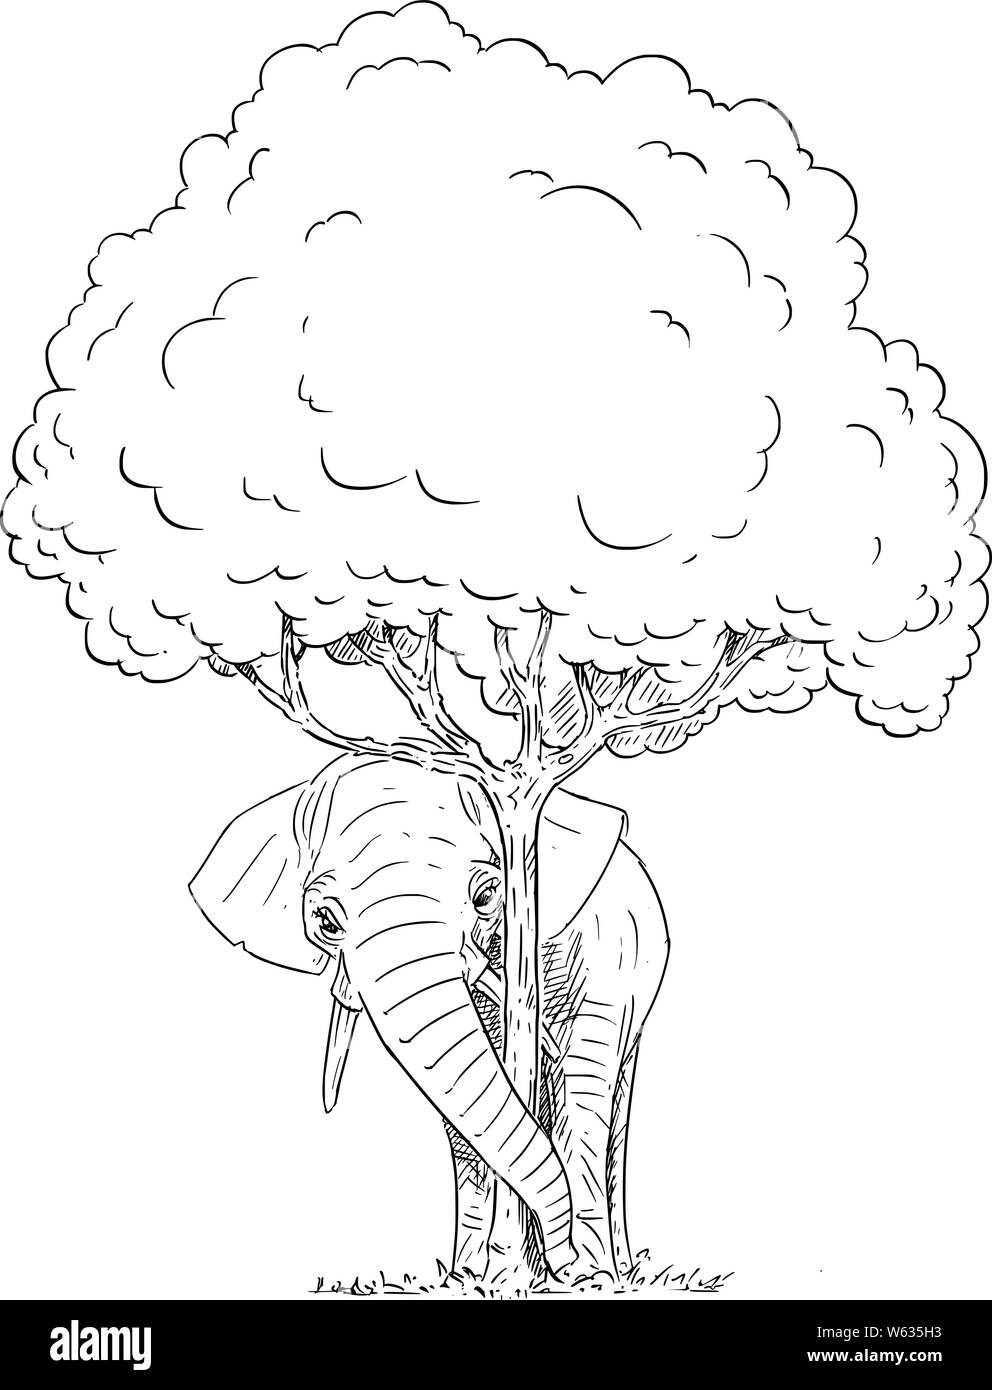 Vektor Komikbild konzeptionelle Darstellung der Elefant versteckt sich hinter Baum. Die letzten Elefanten Herde ist versteckt in den letzten Wald. Umweltkonzept. Stock Vektor